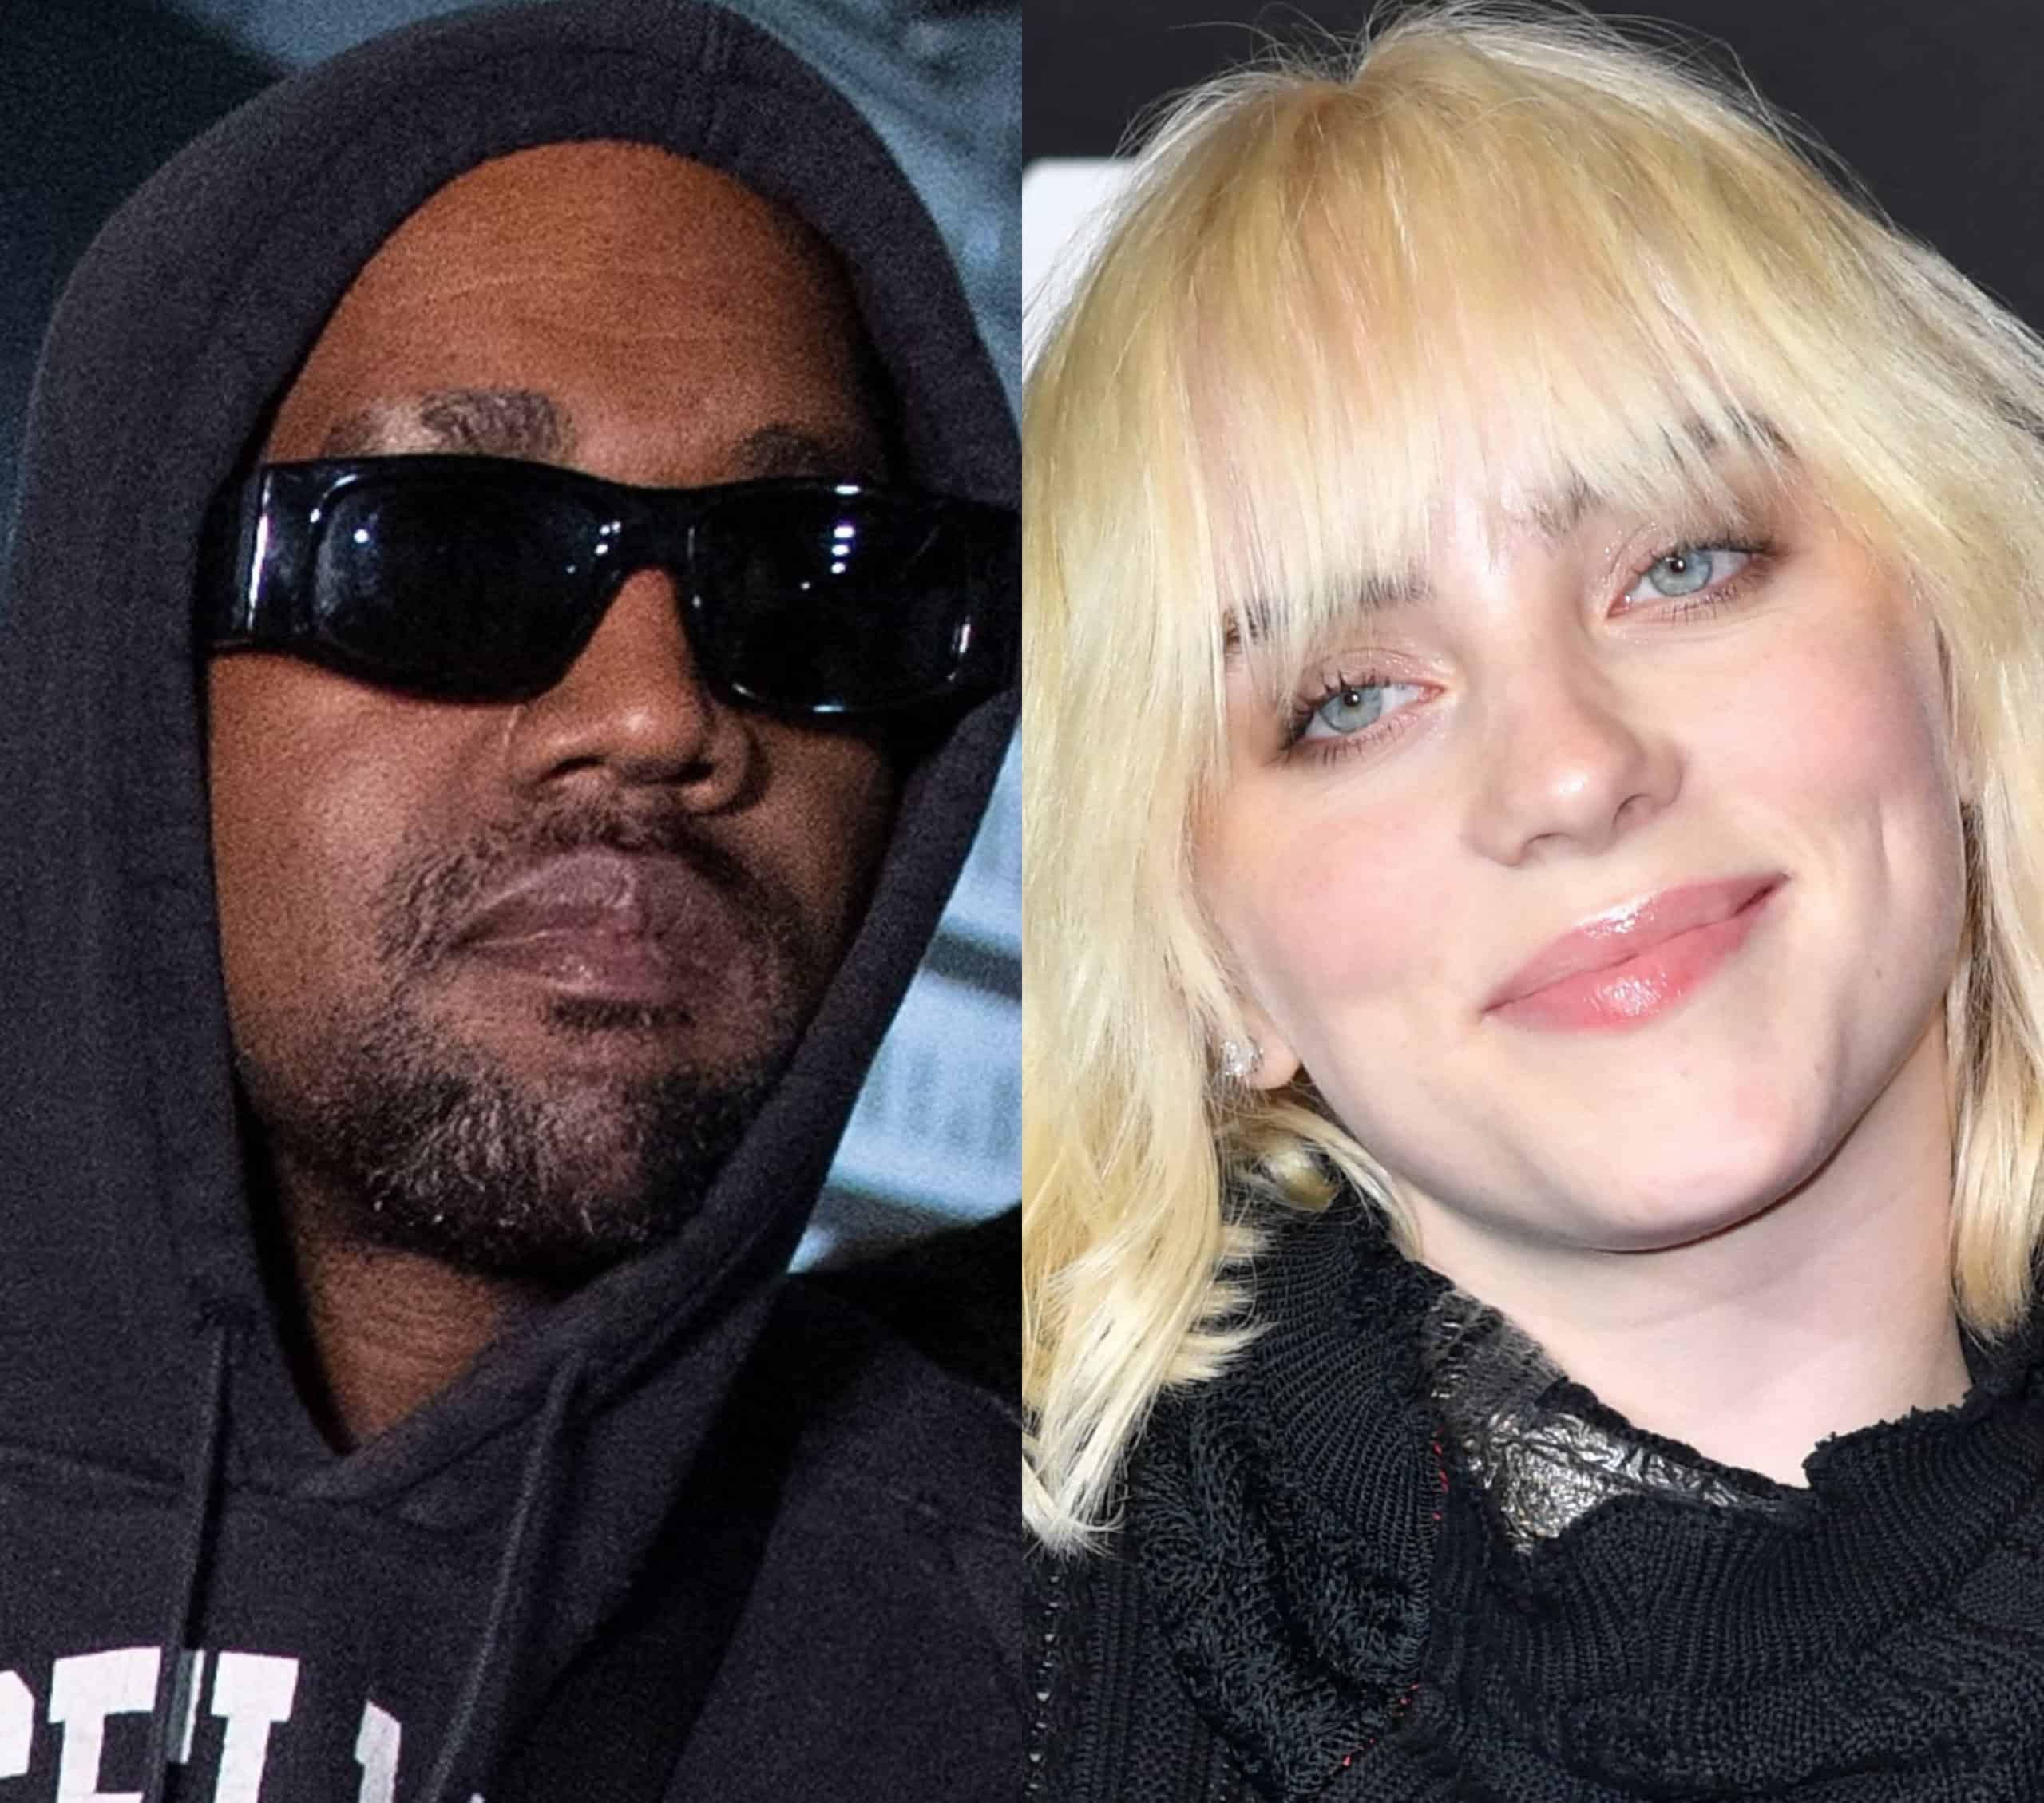 Kanye West and Billie Eilish To Headline Coachella 2022 Festival